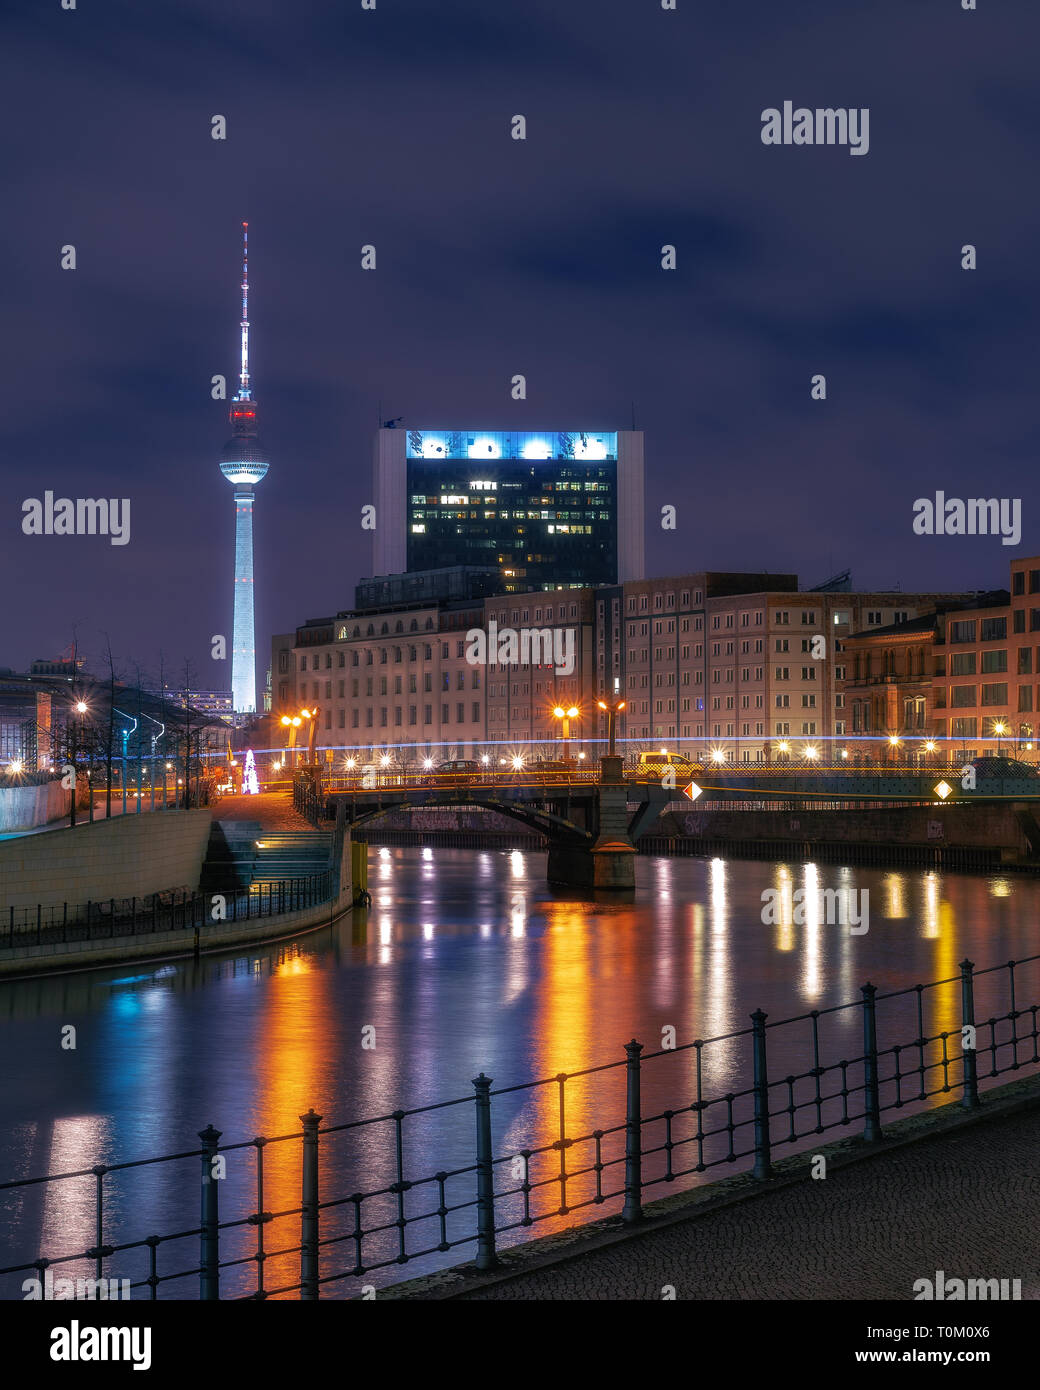 Berlin Ville de nuit avec de beaux néons dans un autre look futuriste Banque D'Images